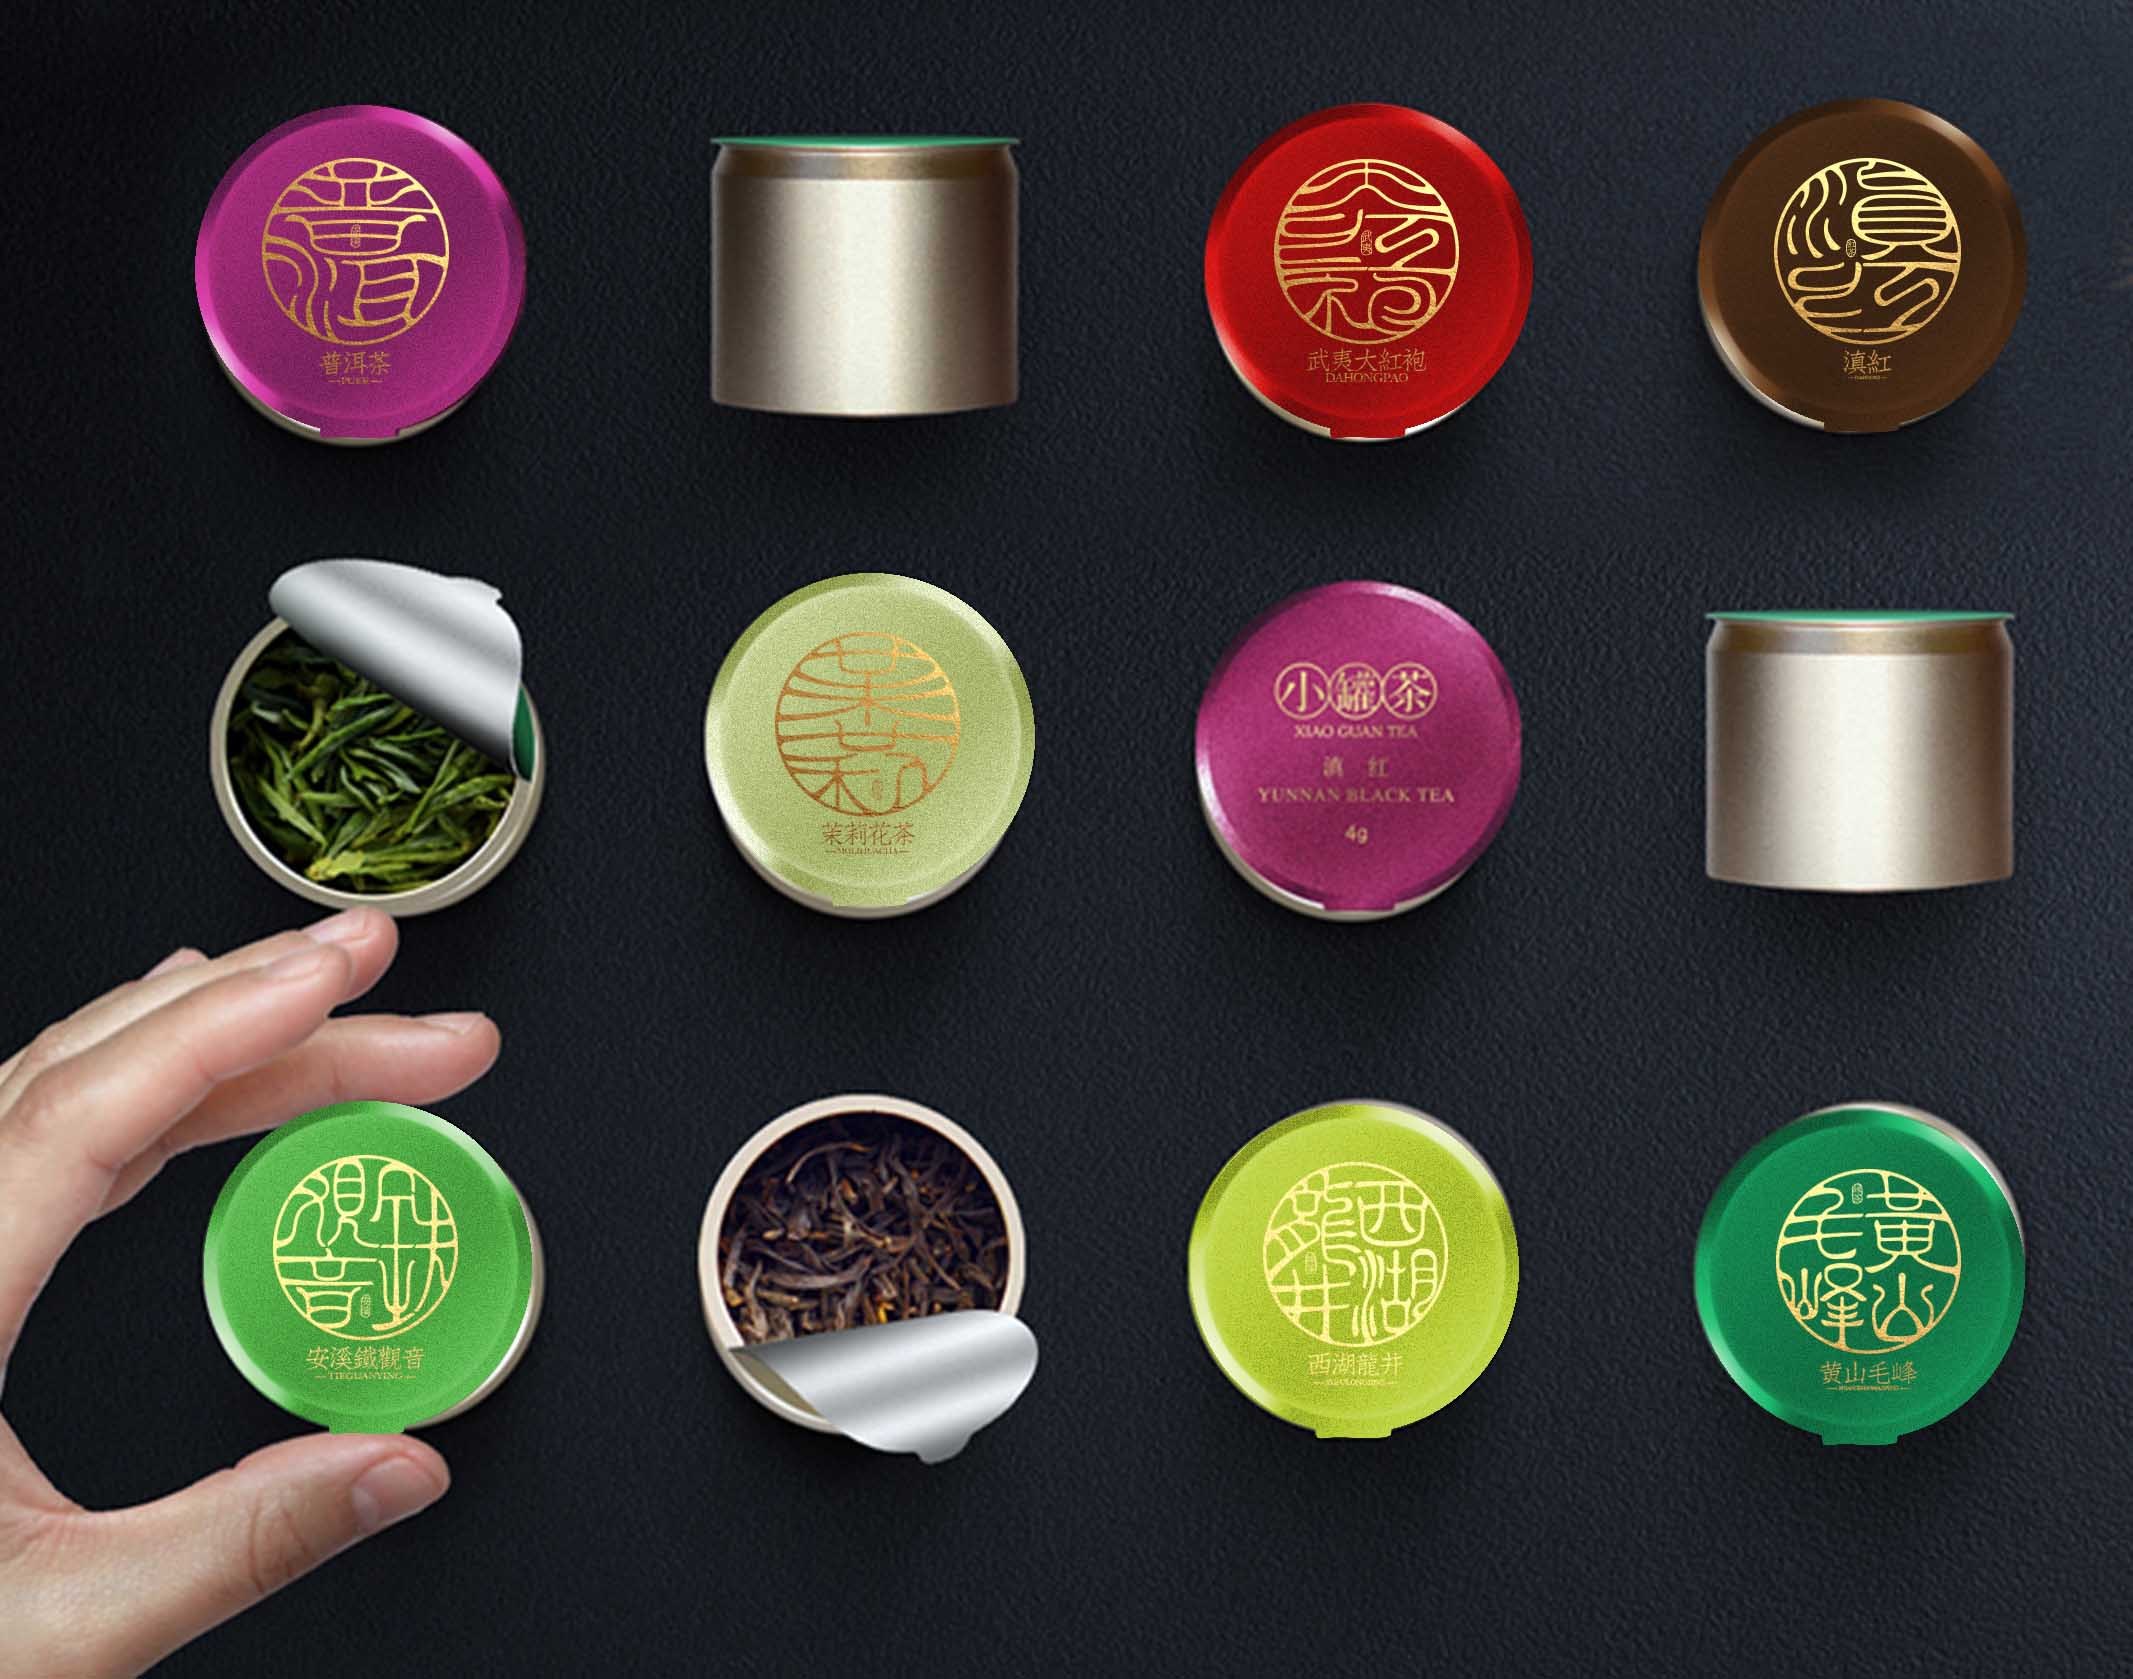  小罐头茶的多元化布局带动了中国茶业的发展